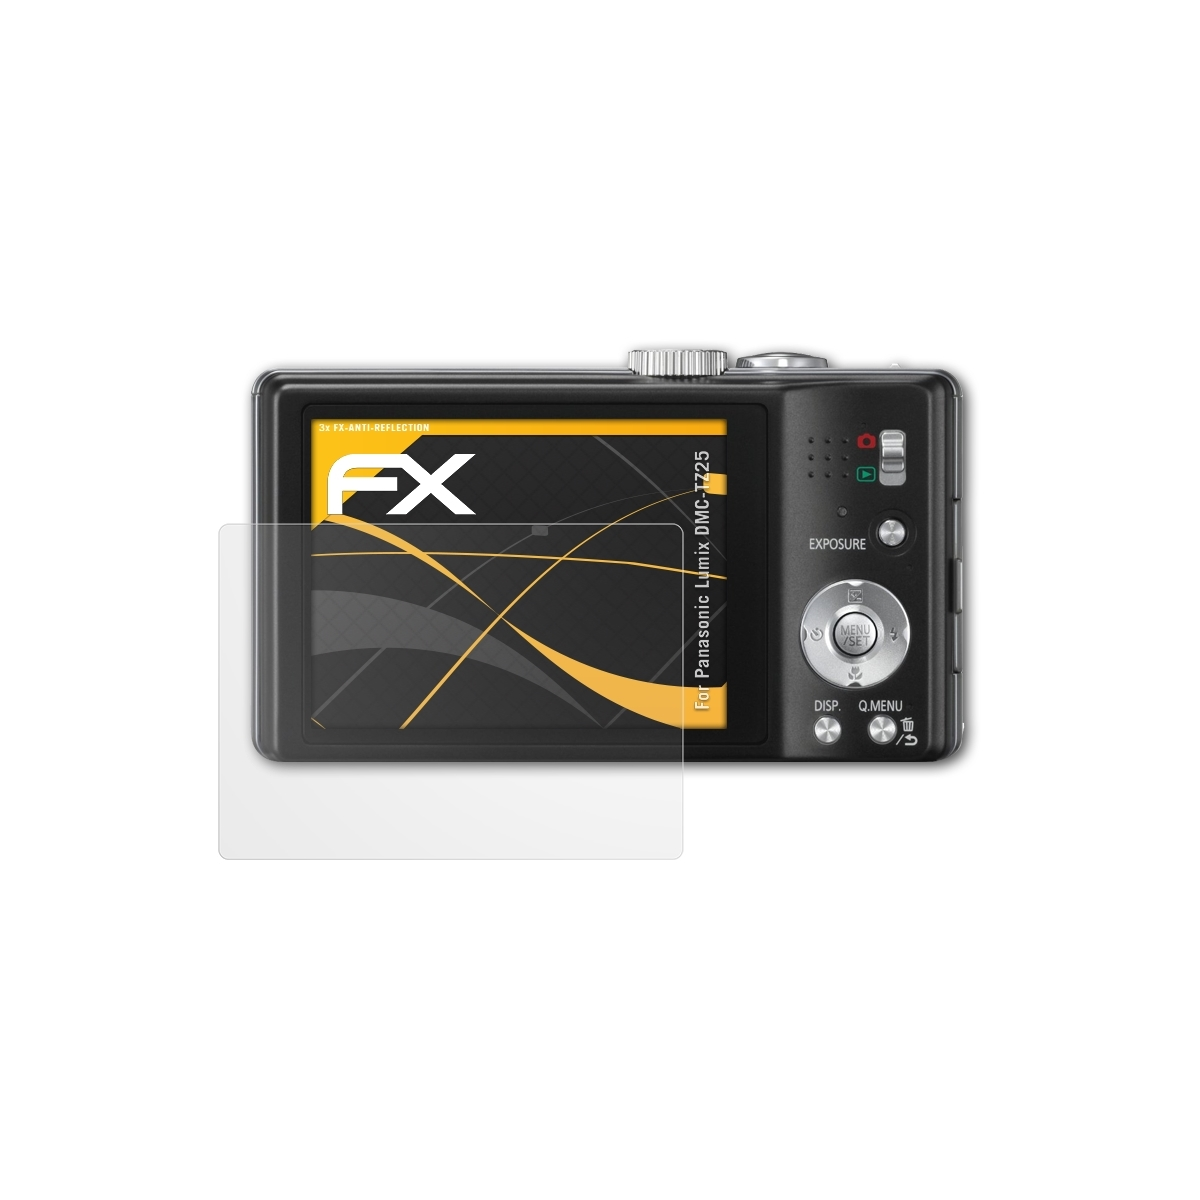 ATFOLIX 3x FX-Antireflex Displayschutz(für Panasonic DMC-TZ25) Lumix